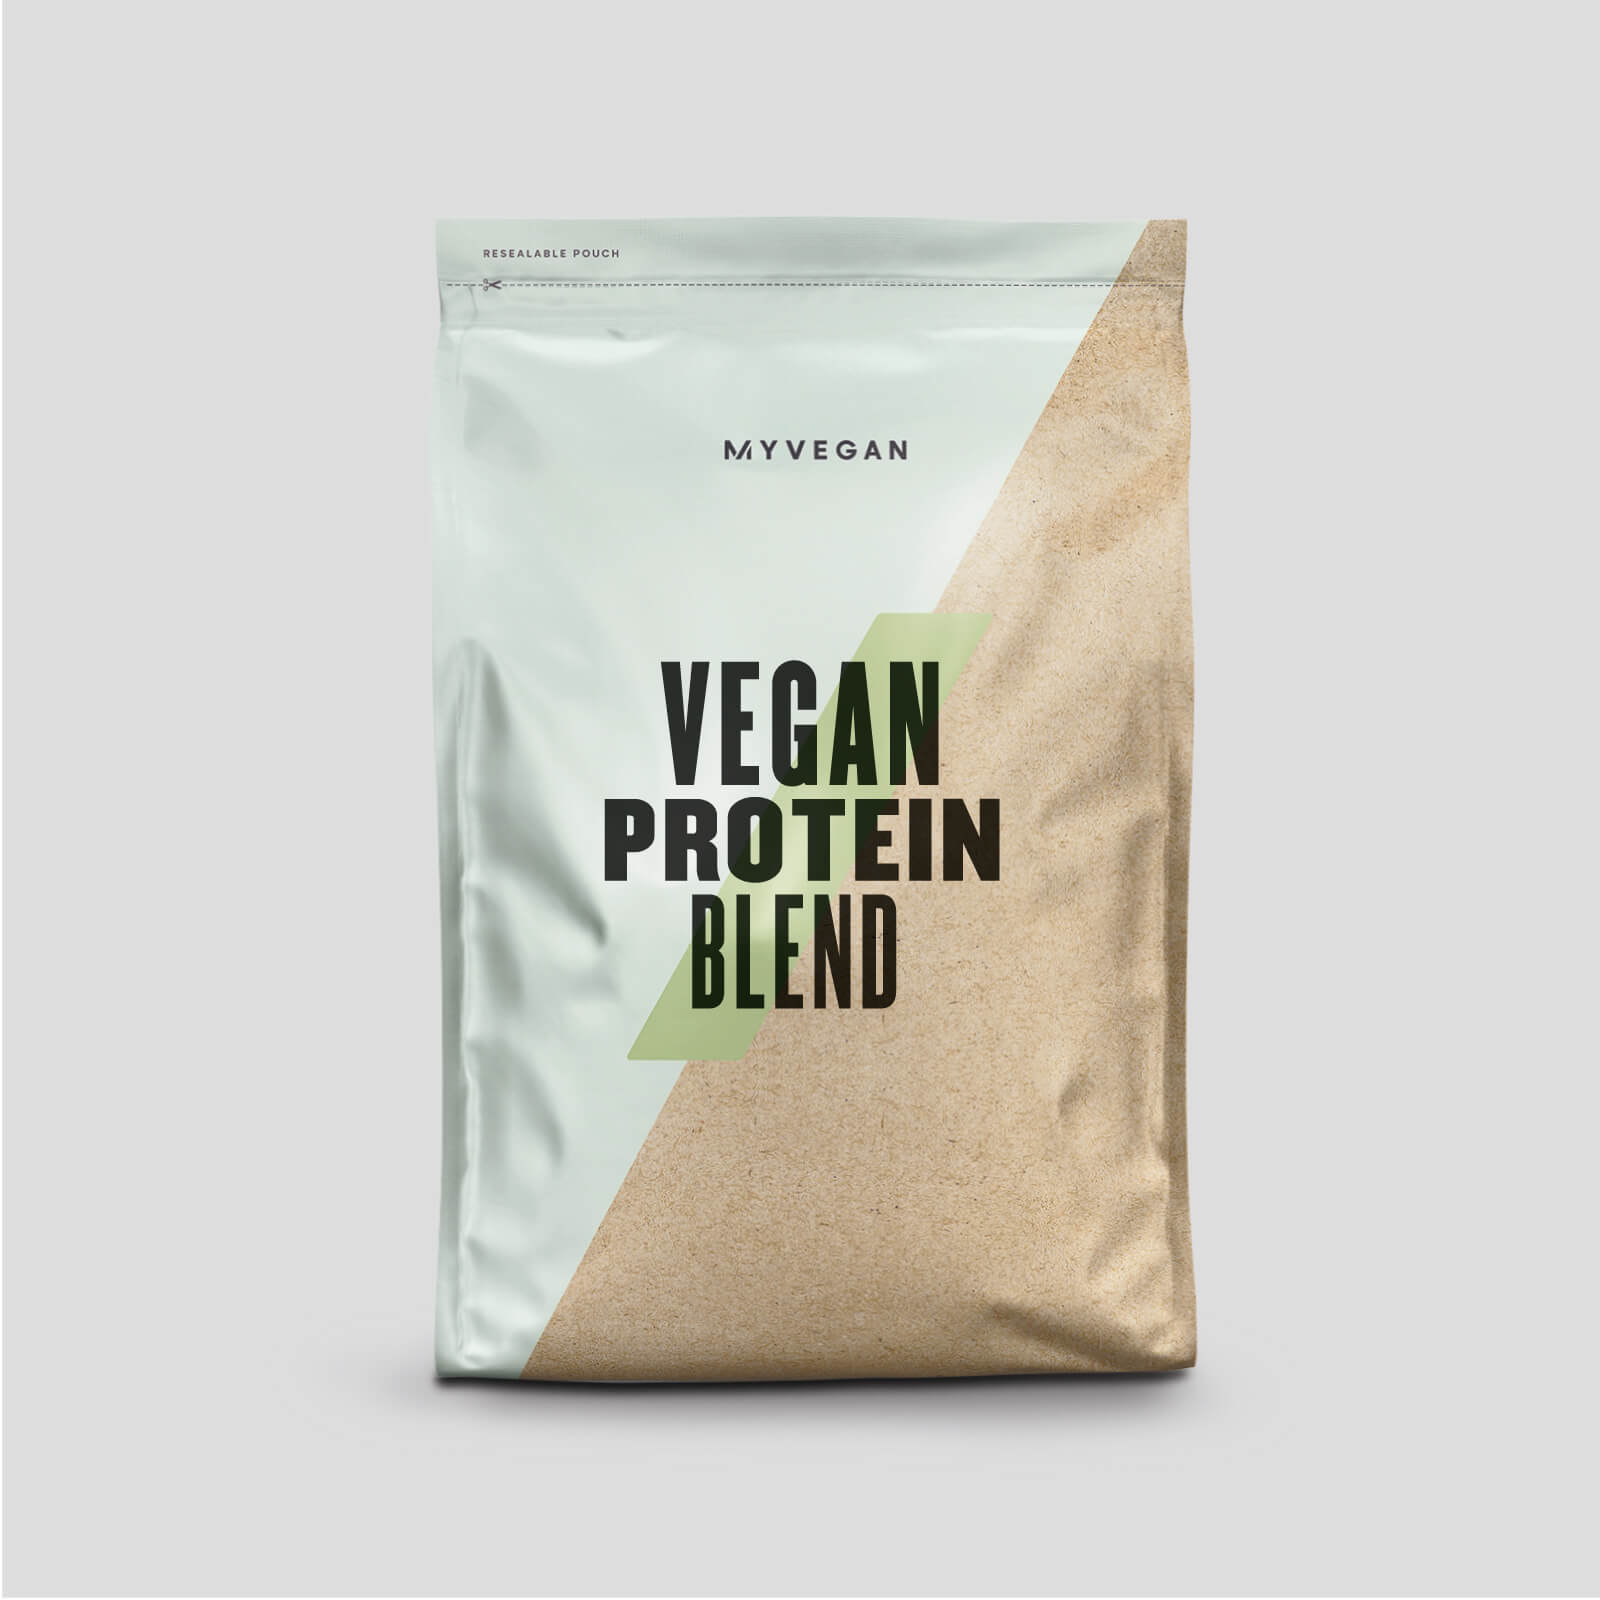 Myprotein Vegan Protein Blend - 500g - Unflavoured